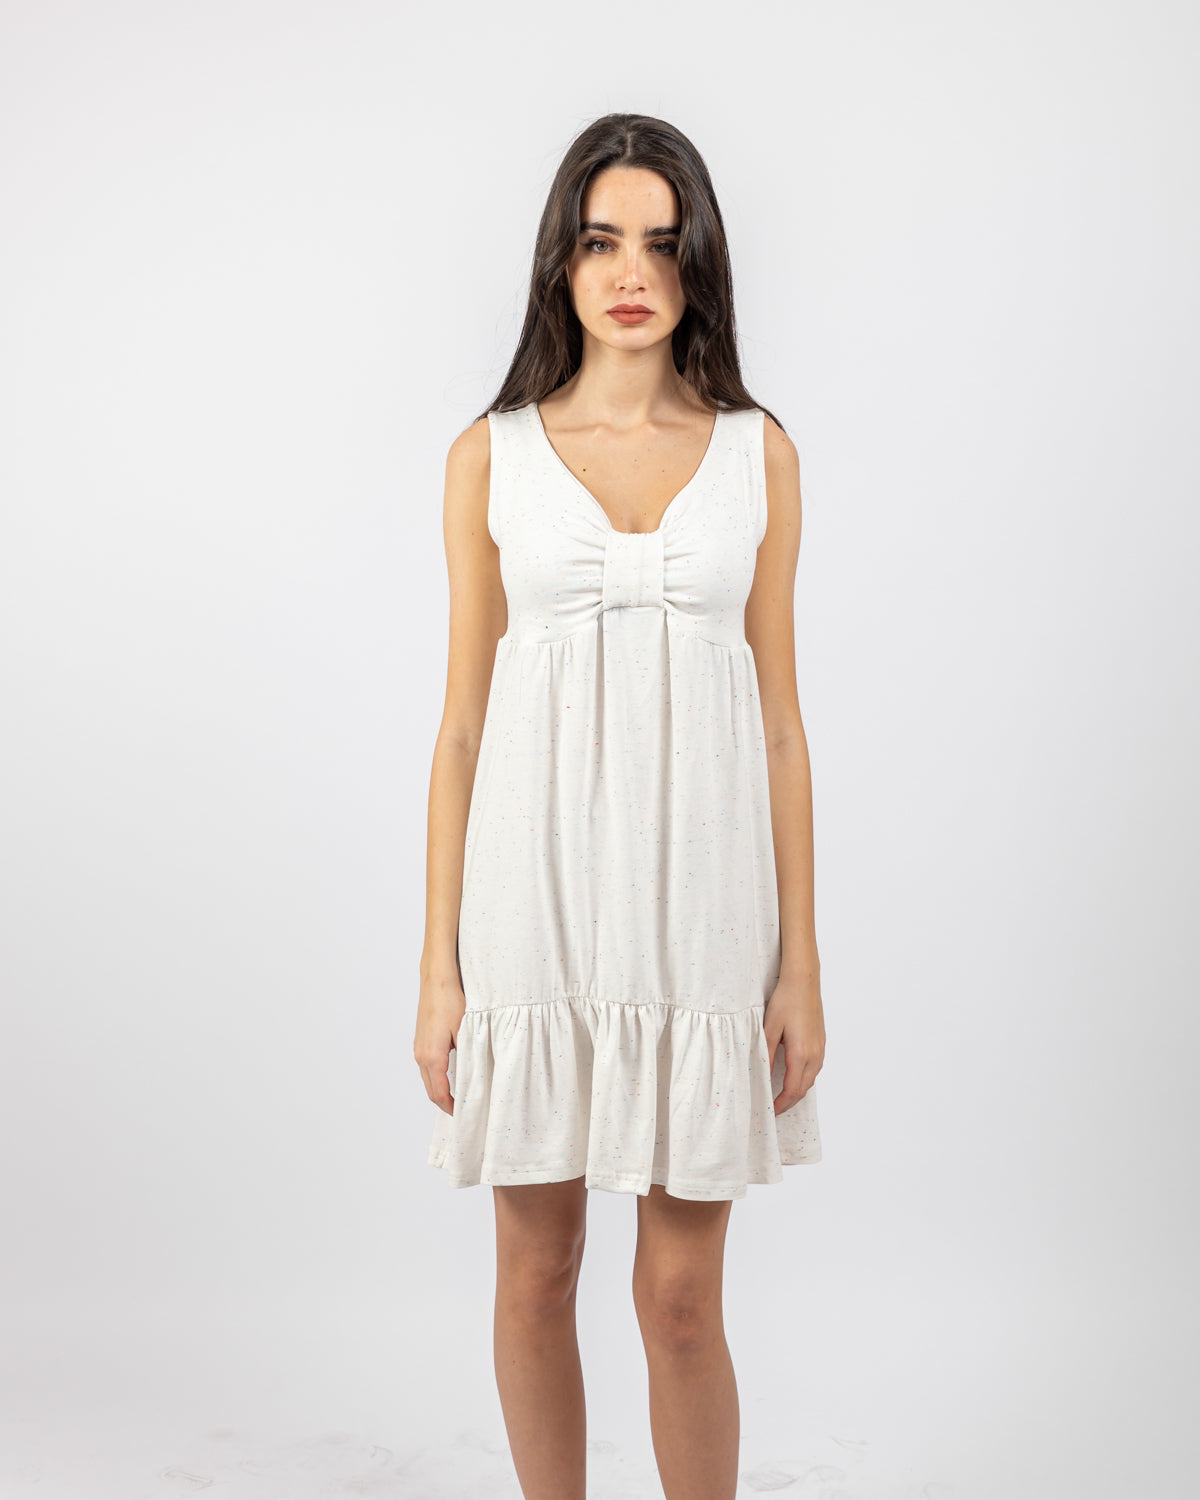 Sleeveless Dress For Women - White